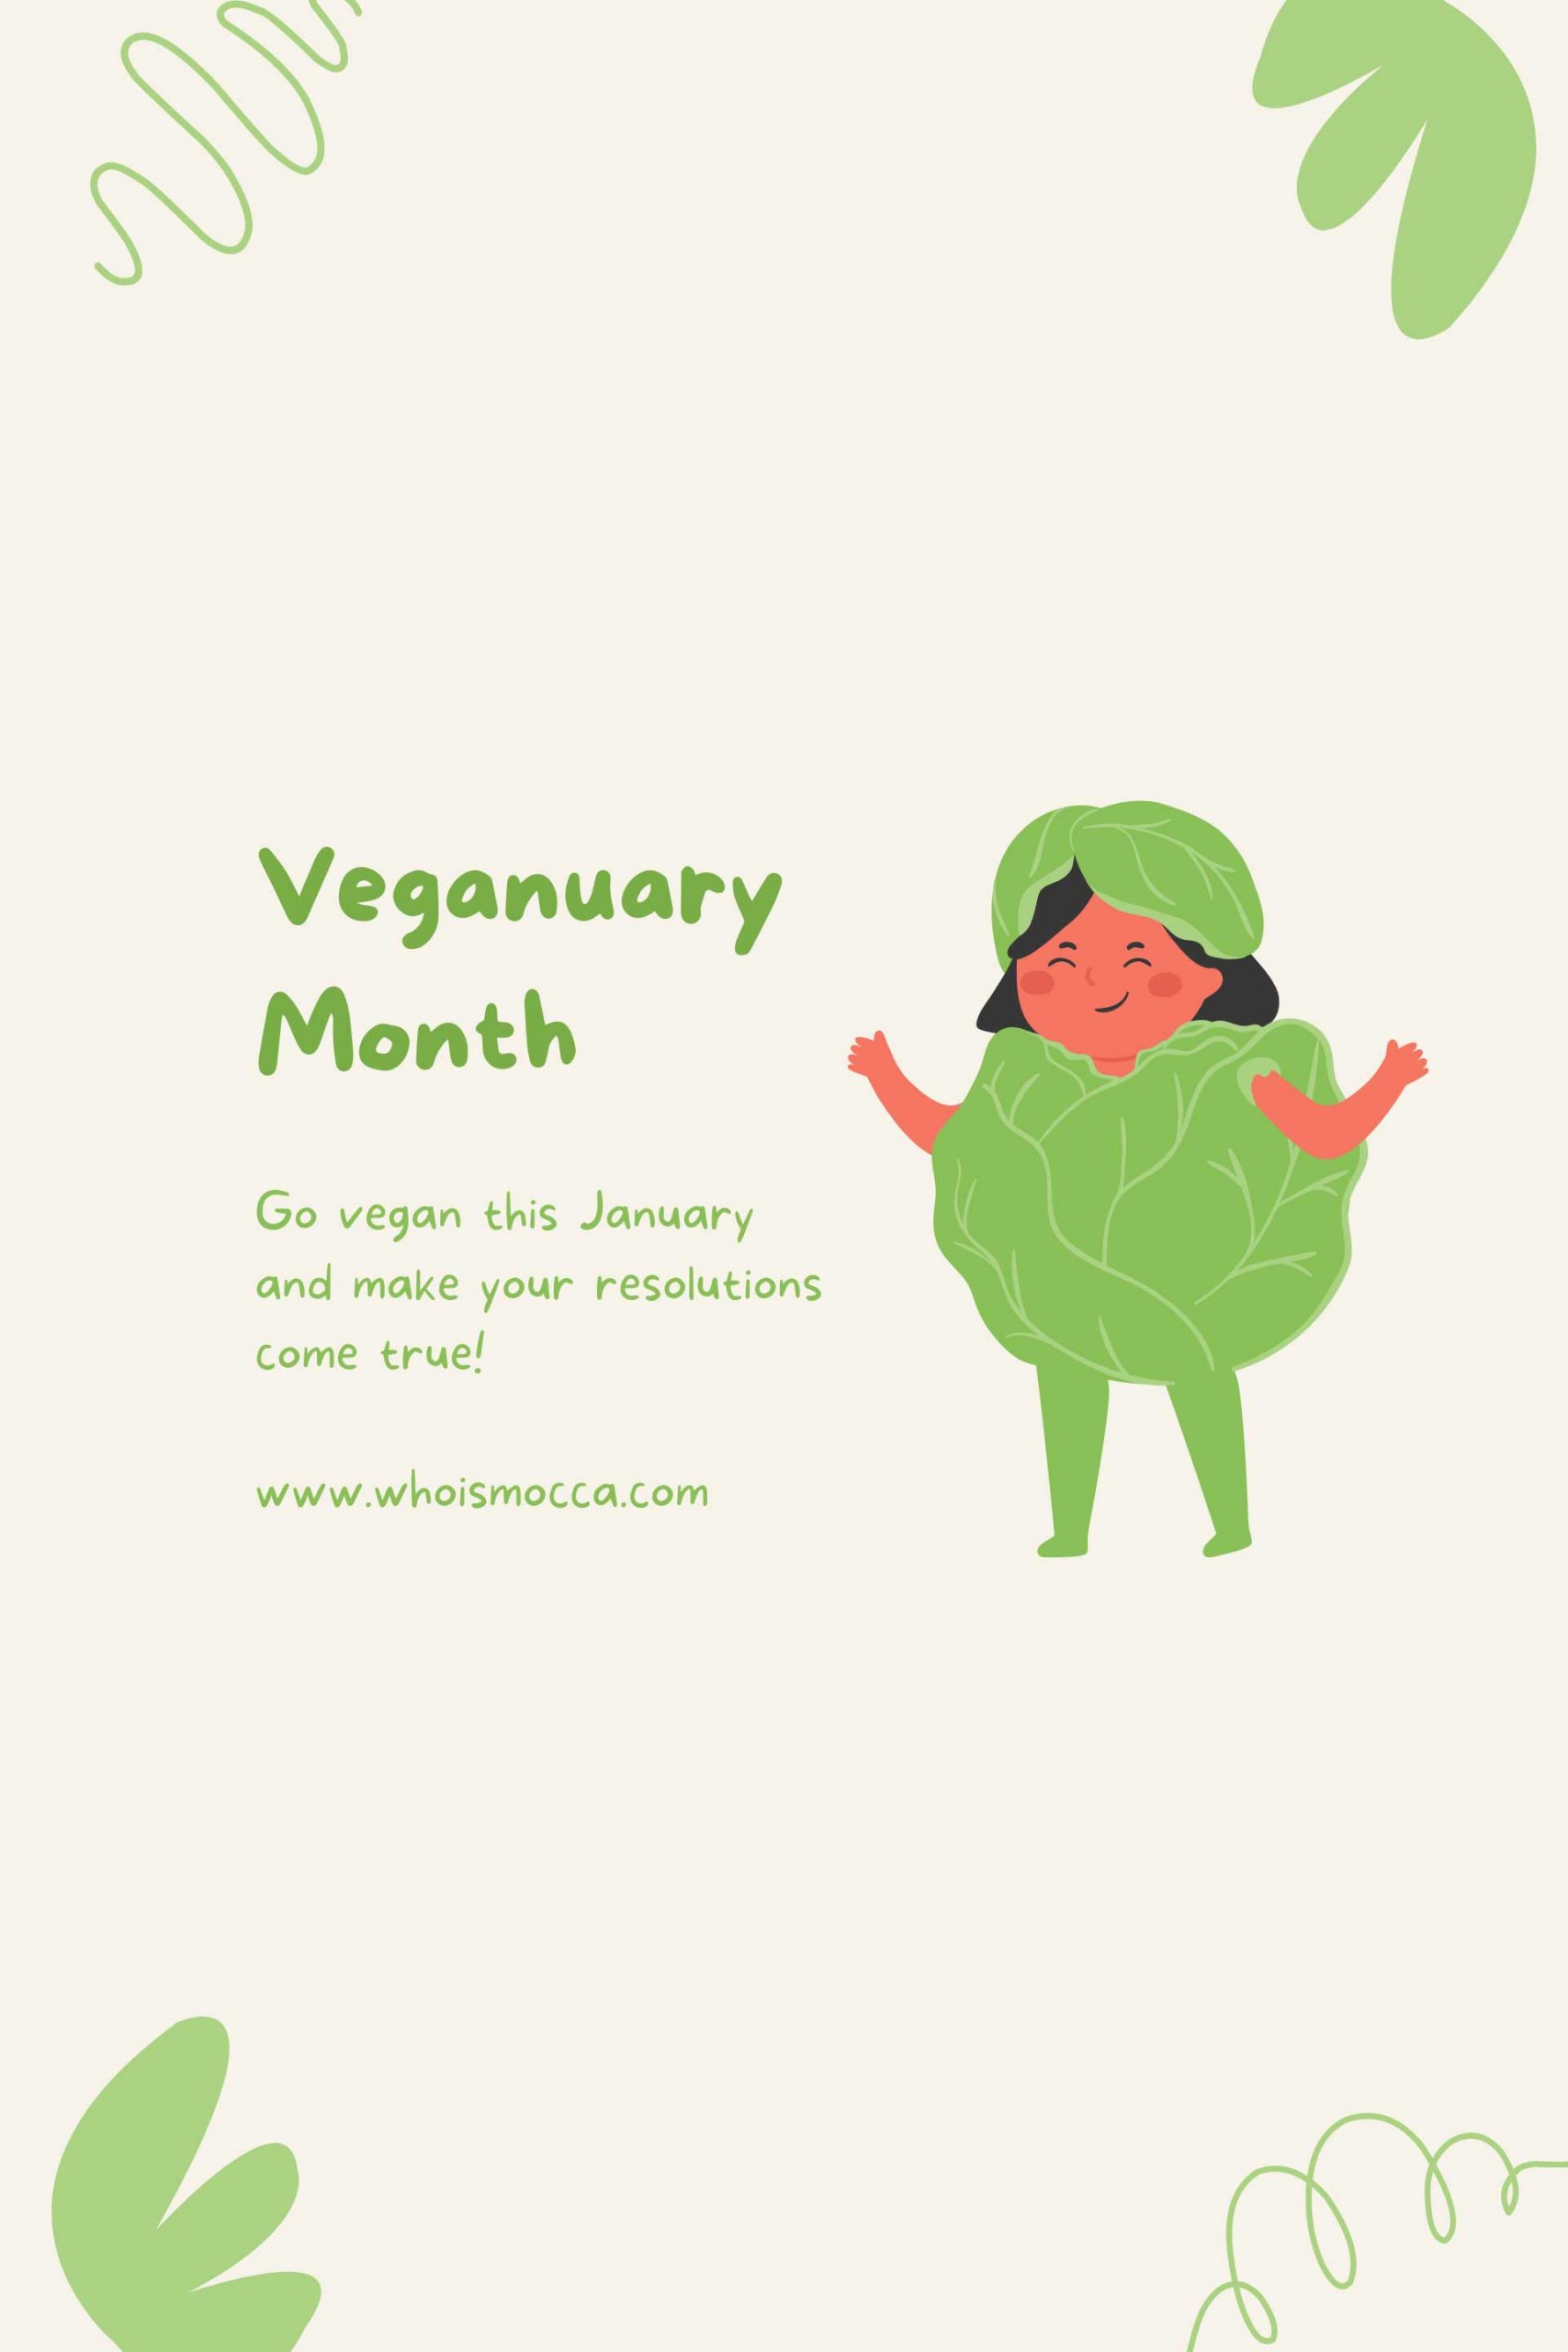 Der Veganuary ist eine großartige Möglichkeit, das neue Jahr nachhaltig und gesund zu starten. Die Veganuary-Challenge ist die Herausforderung, sich vegan zu ernähren und das neue Jahr gesund und mitfühlend zu beginnen. Lies mehr zu meinen Kick-Start-TIpps am Blog www.whoismocca.com